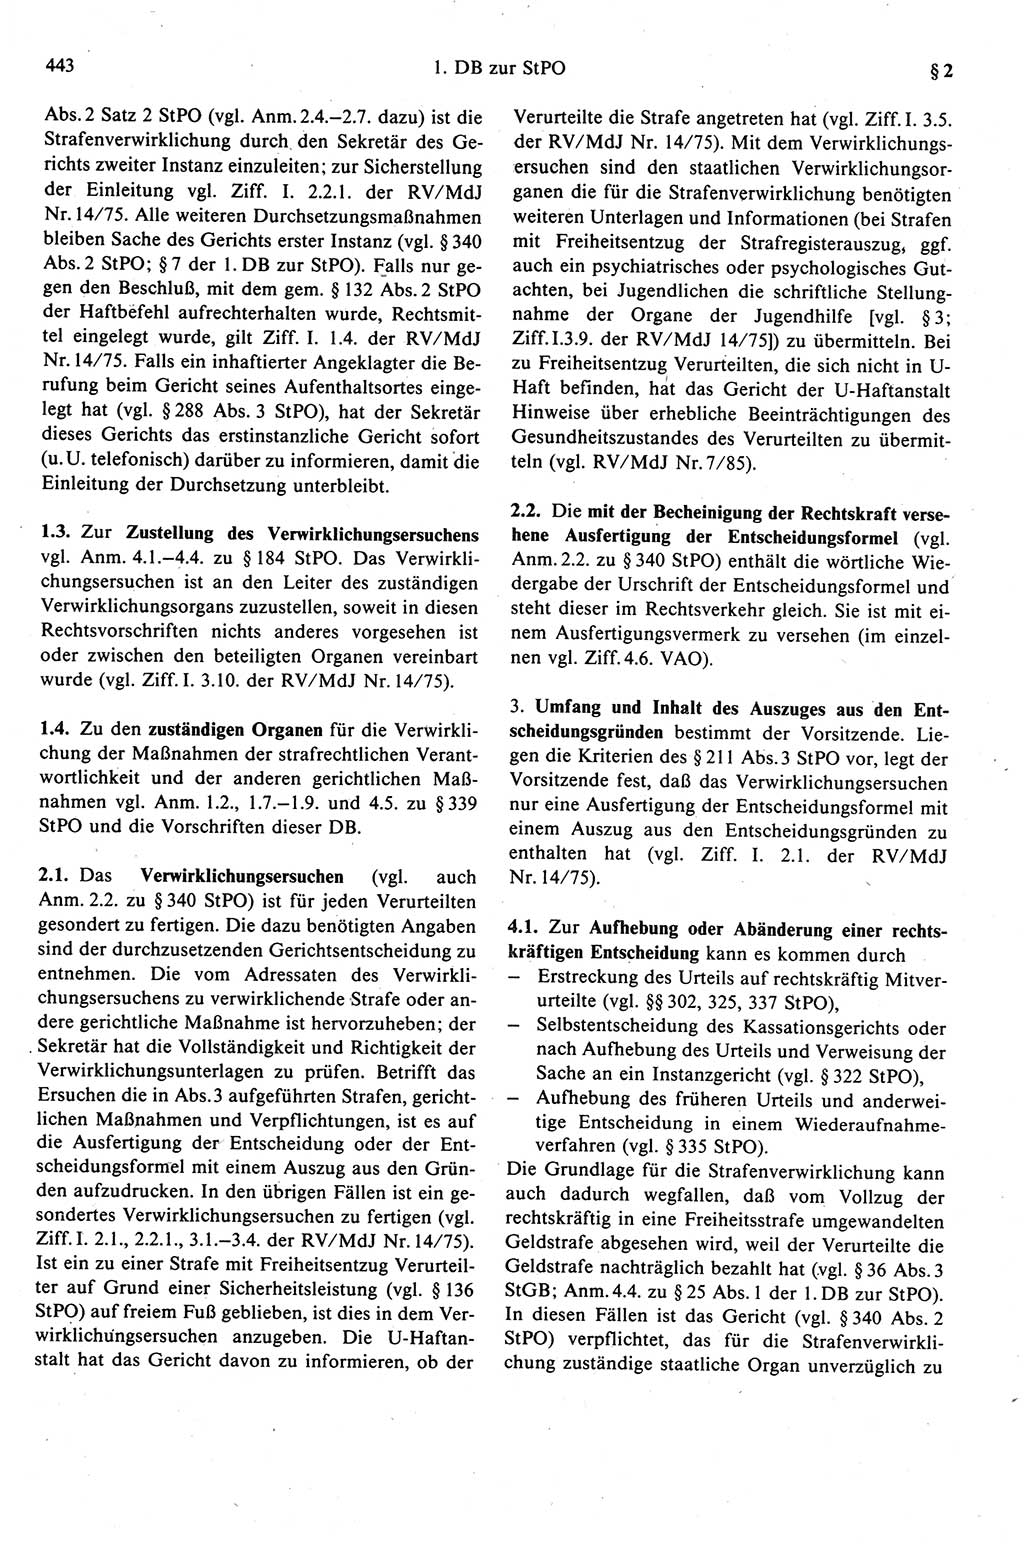 Strafprozeßrecht der DDR (Deutsche Demokratische Republik), Kommentar zur Strafprozeßordnung (StPO) 1989, Seite 443 (Strafprozeßr. DDR Komm. StPO 1989, S. 443)